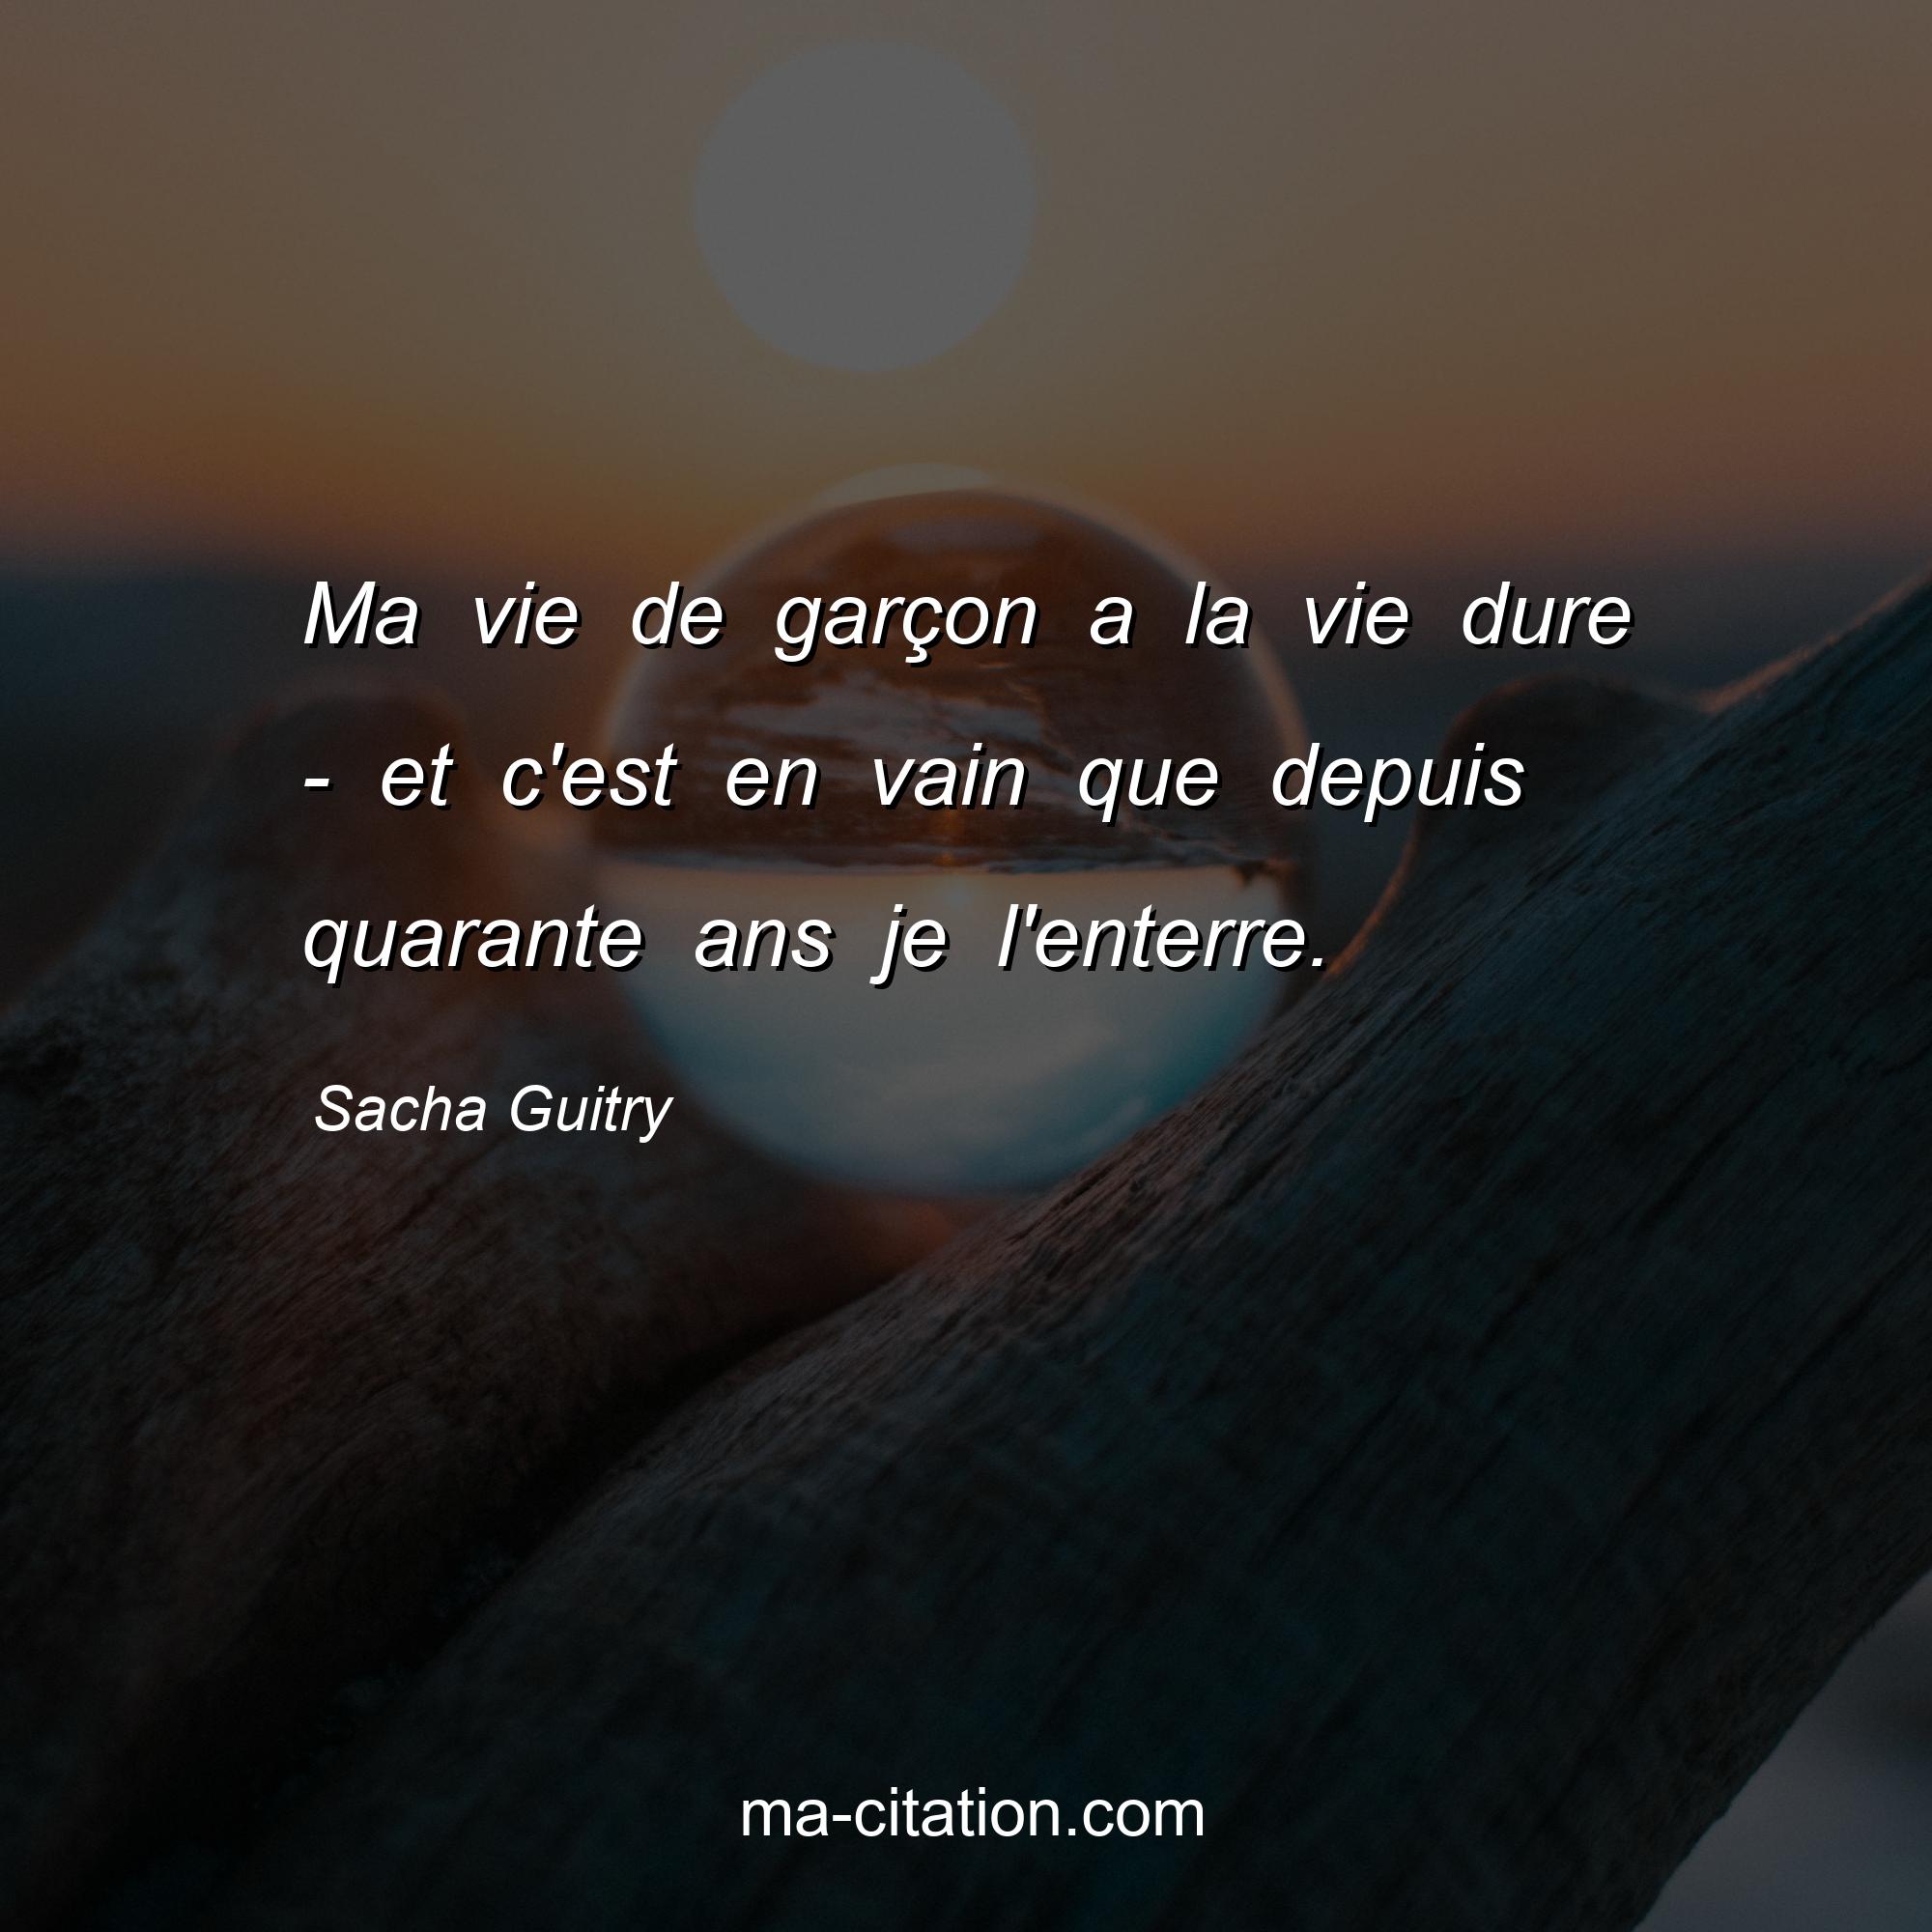 Sacha Guitry : Ma vie de garçon a la vie dure - et c'est en vain que depuis quarante ans je l'enterre.